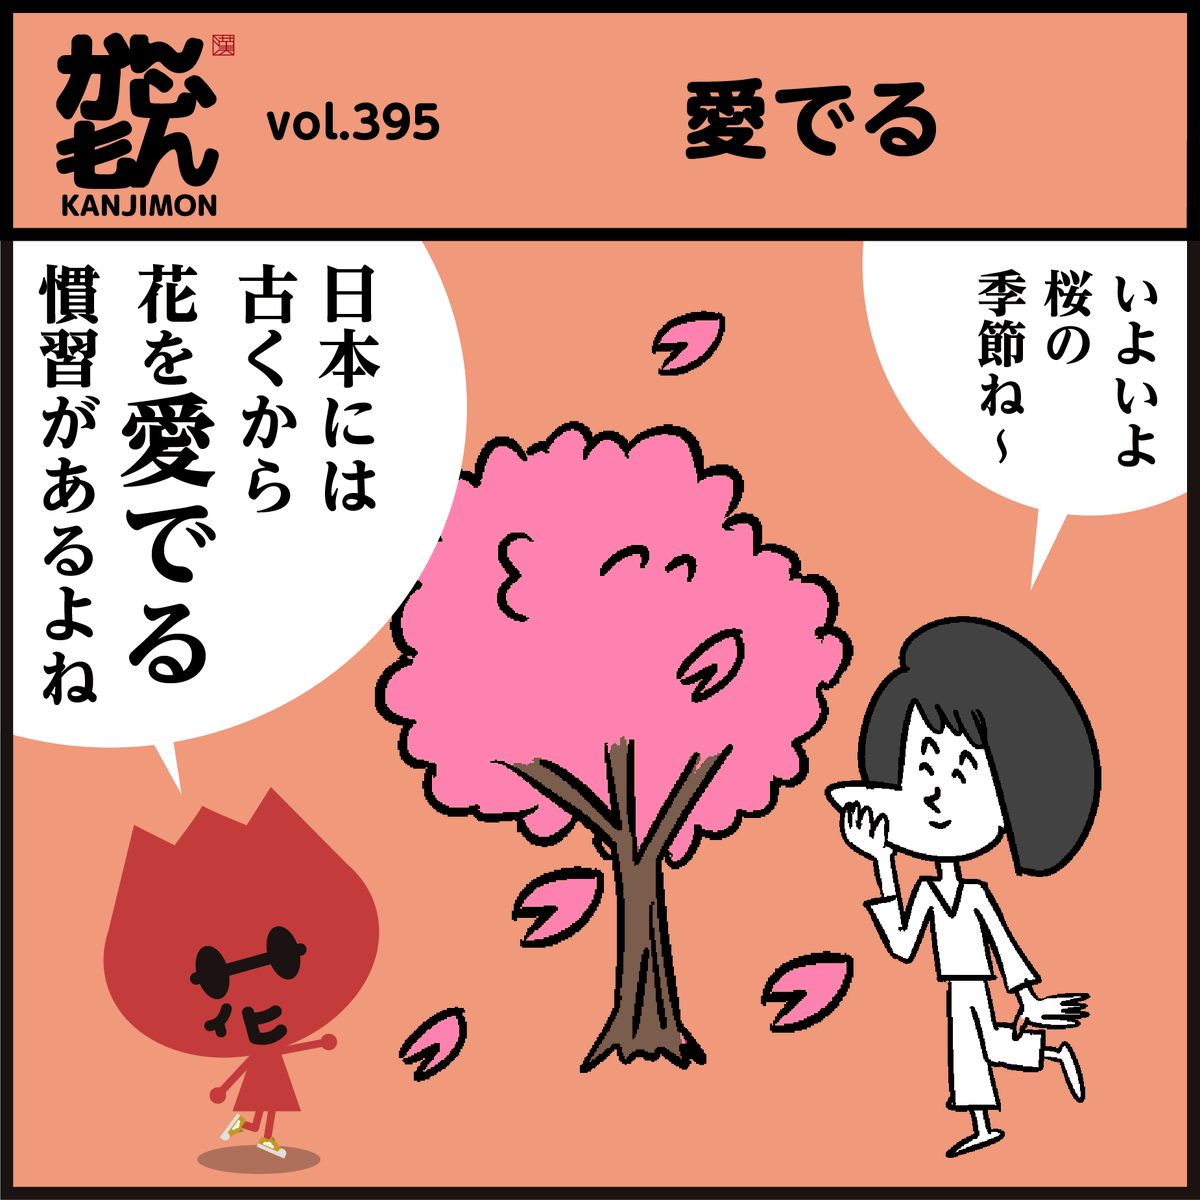 漢字【愛でる】読めましたか?
🌸桜が満開ですね。何かを「愛でる」ことで、気持ちが和らぎ、癒やされたりするそうですよ。✿ #イラスト #4コマ漫画 